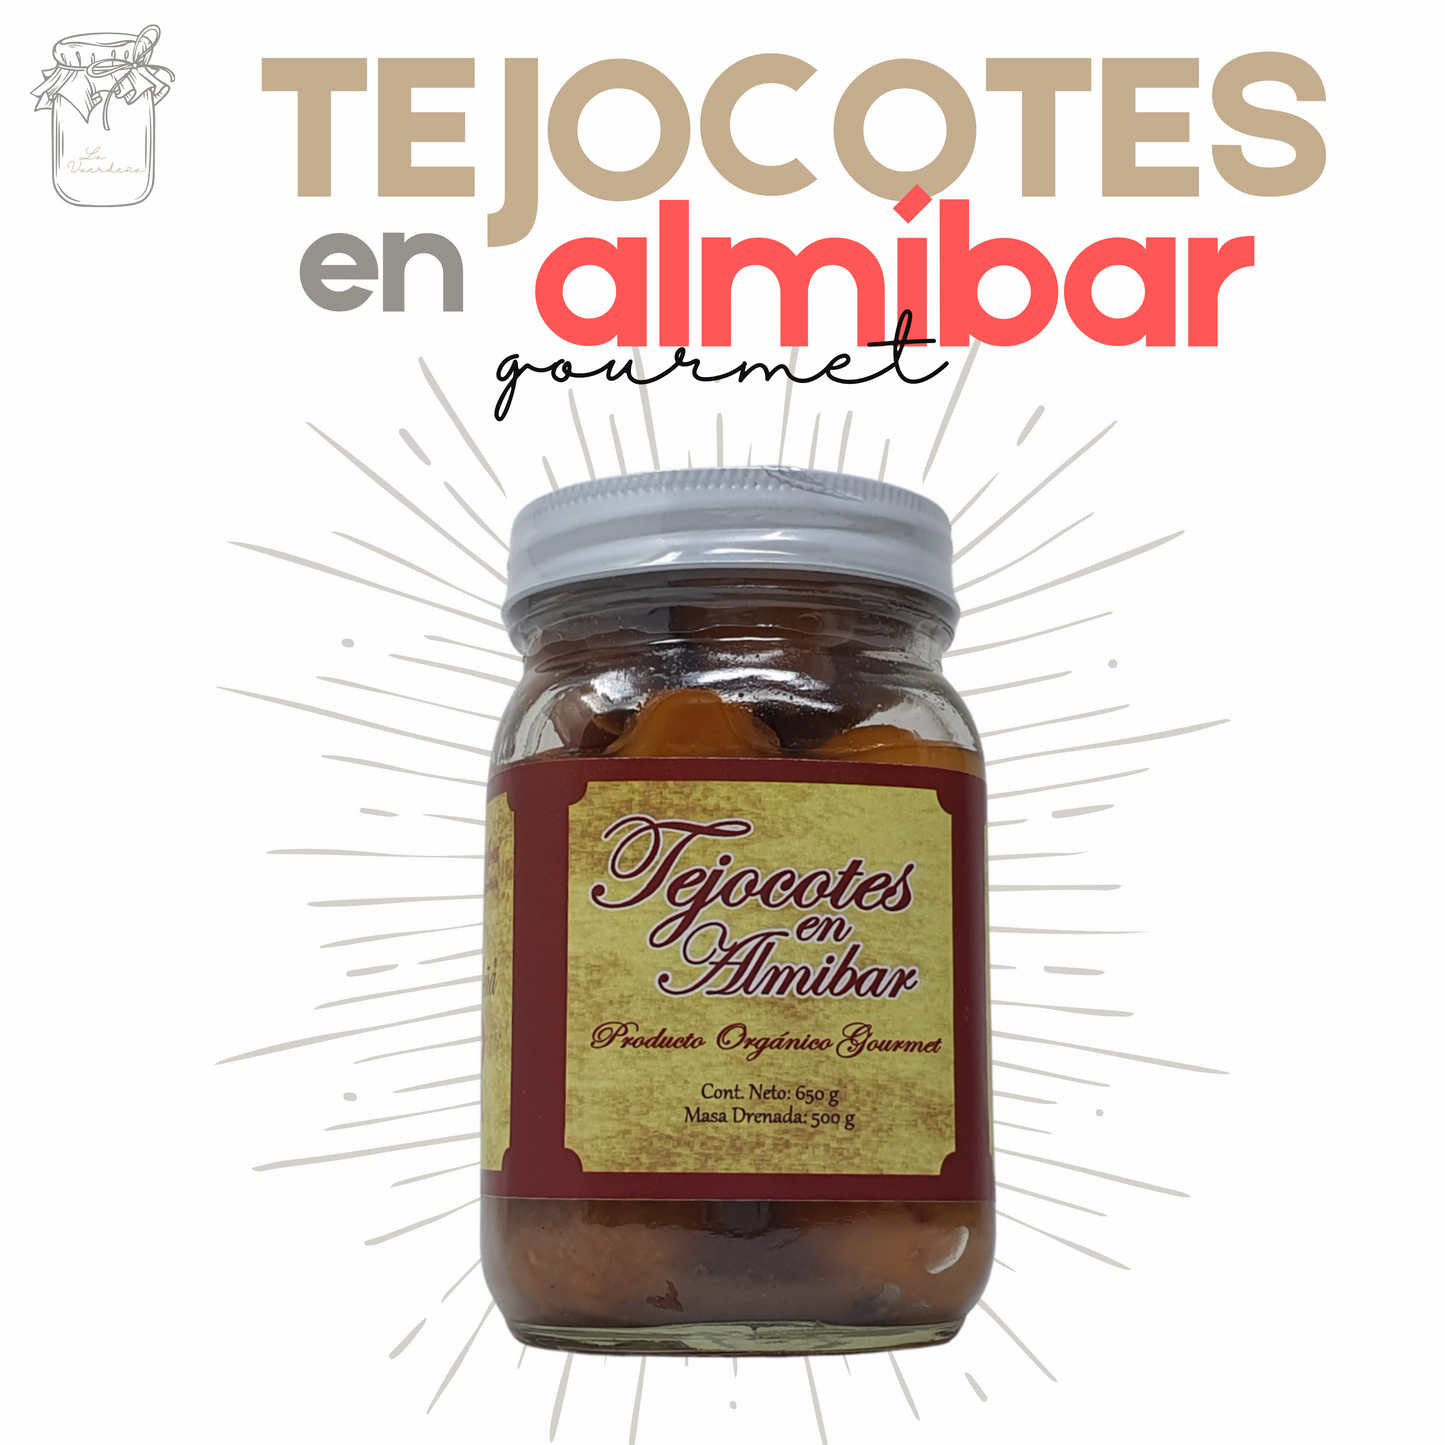 Tejocotes en almíbar | Almíbar | Gourmet | Artesanal | 500grs | Mexpofood